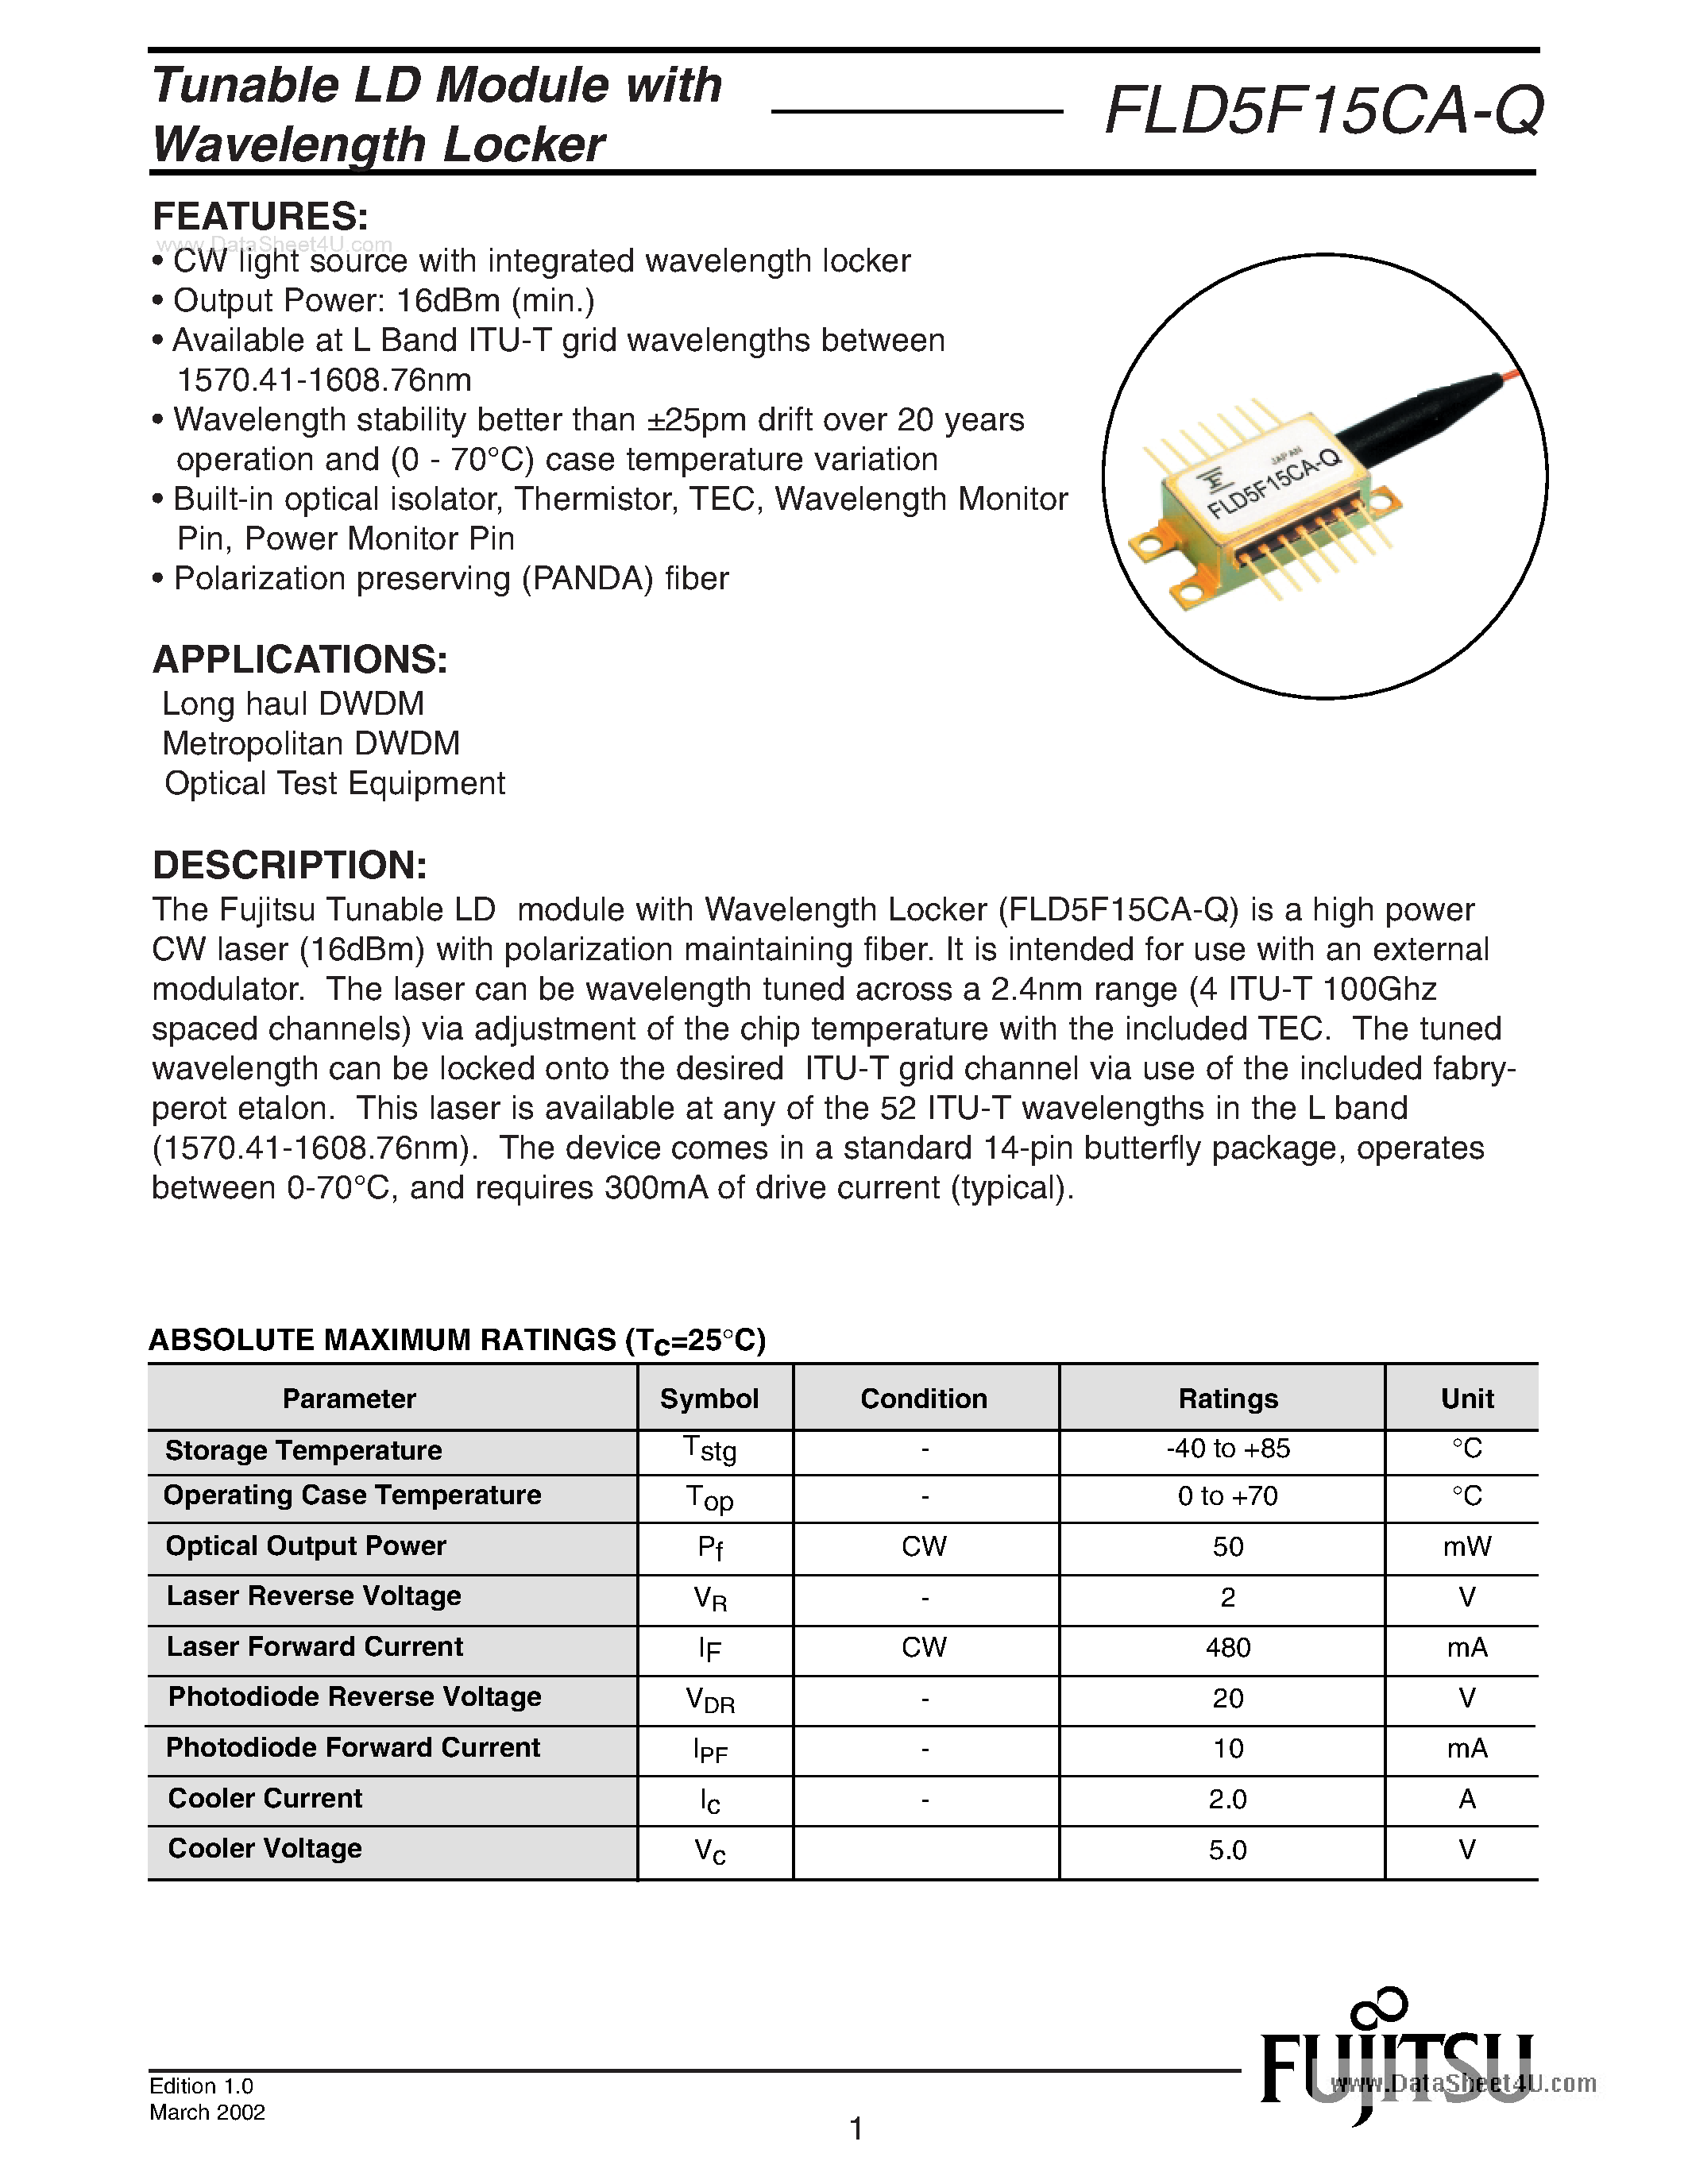 Даташит FLD5F15CA-Q-Optoelectronic страница 1